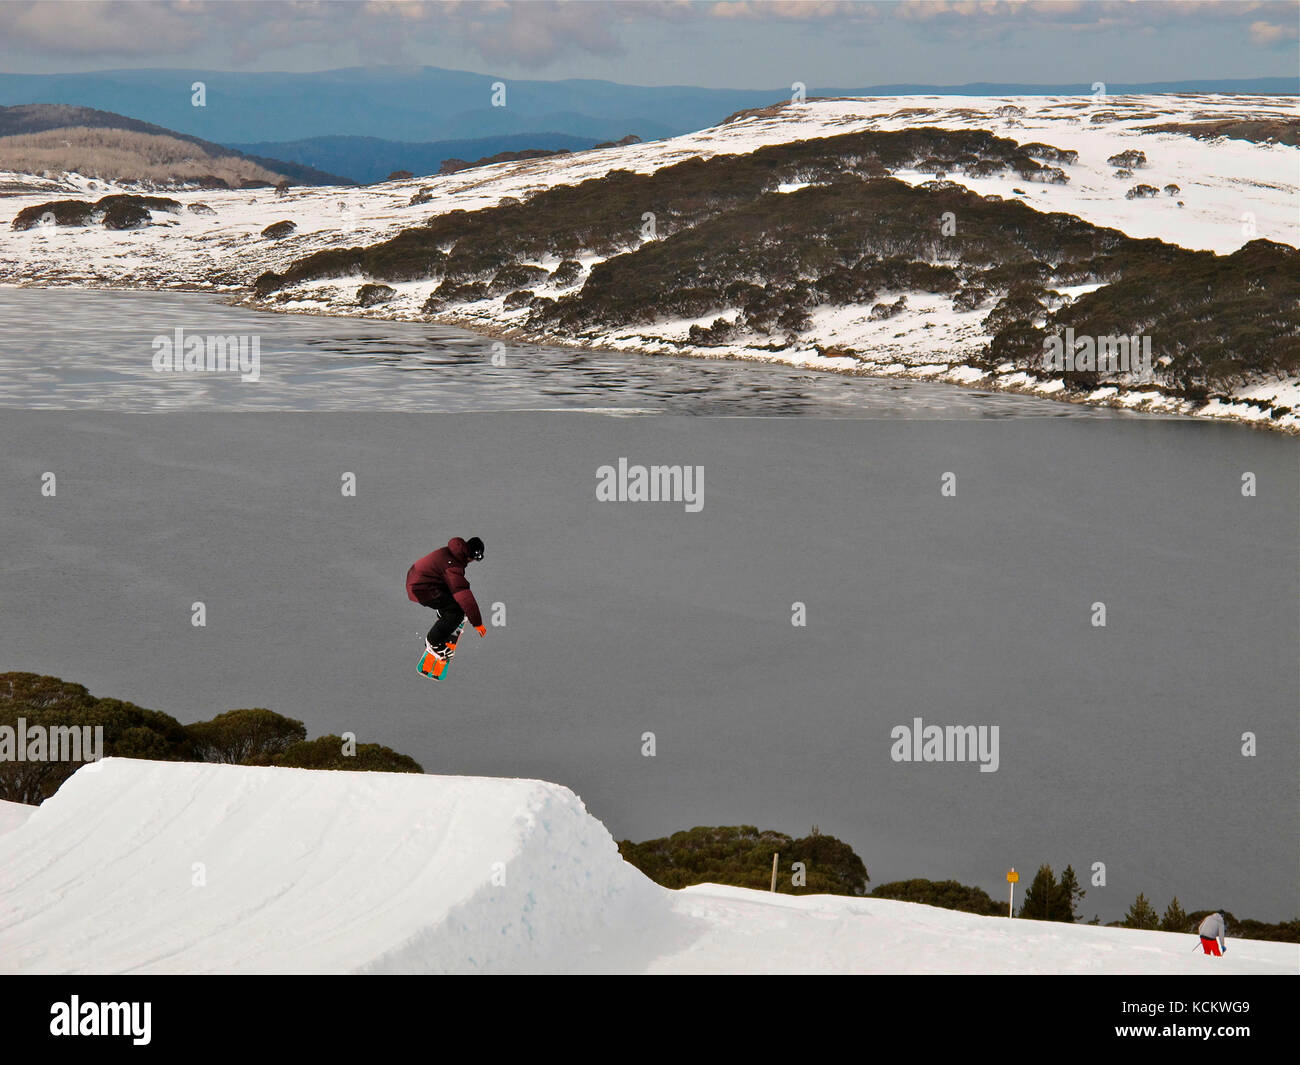 Snowboarder a mitad de salto por encima de la represa Rocky Valley, parte del esquema hidroeléctrico Kiewa. Falls Creek, Parque Nacional Alpine, Victoria, Australia Foto de stock